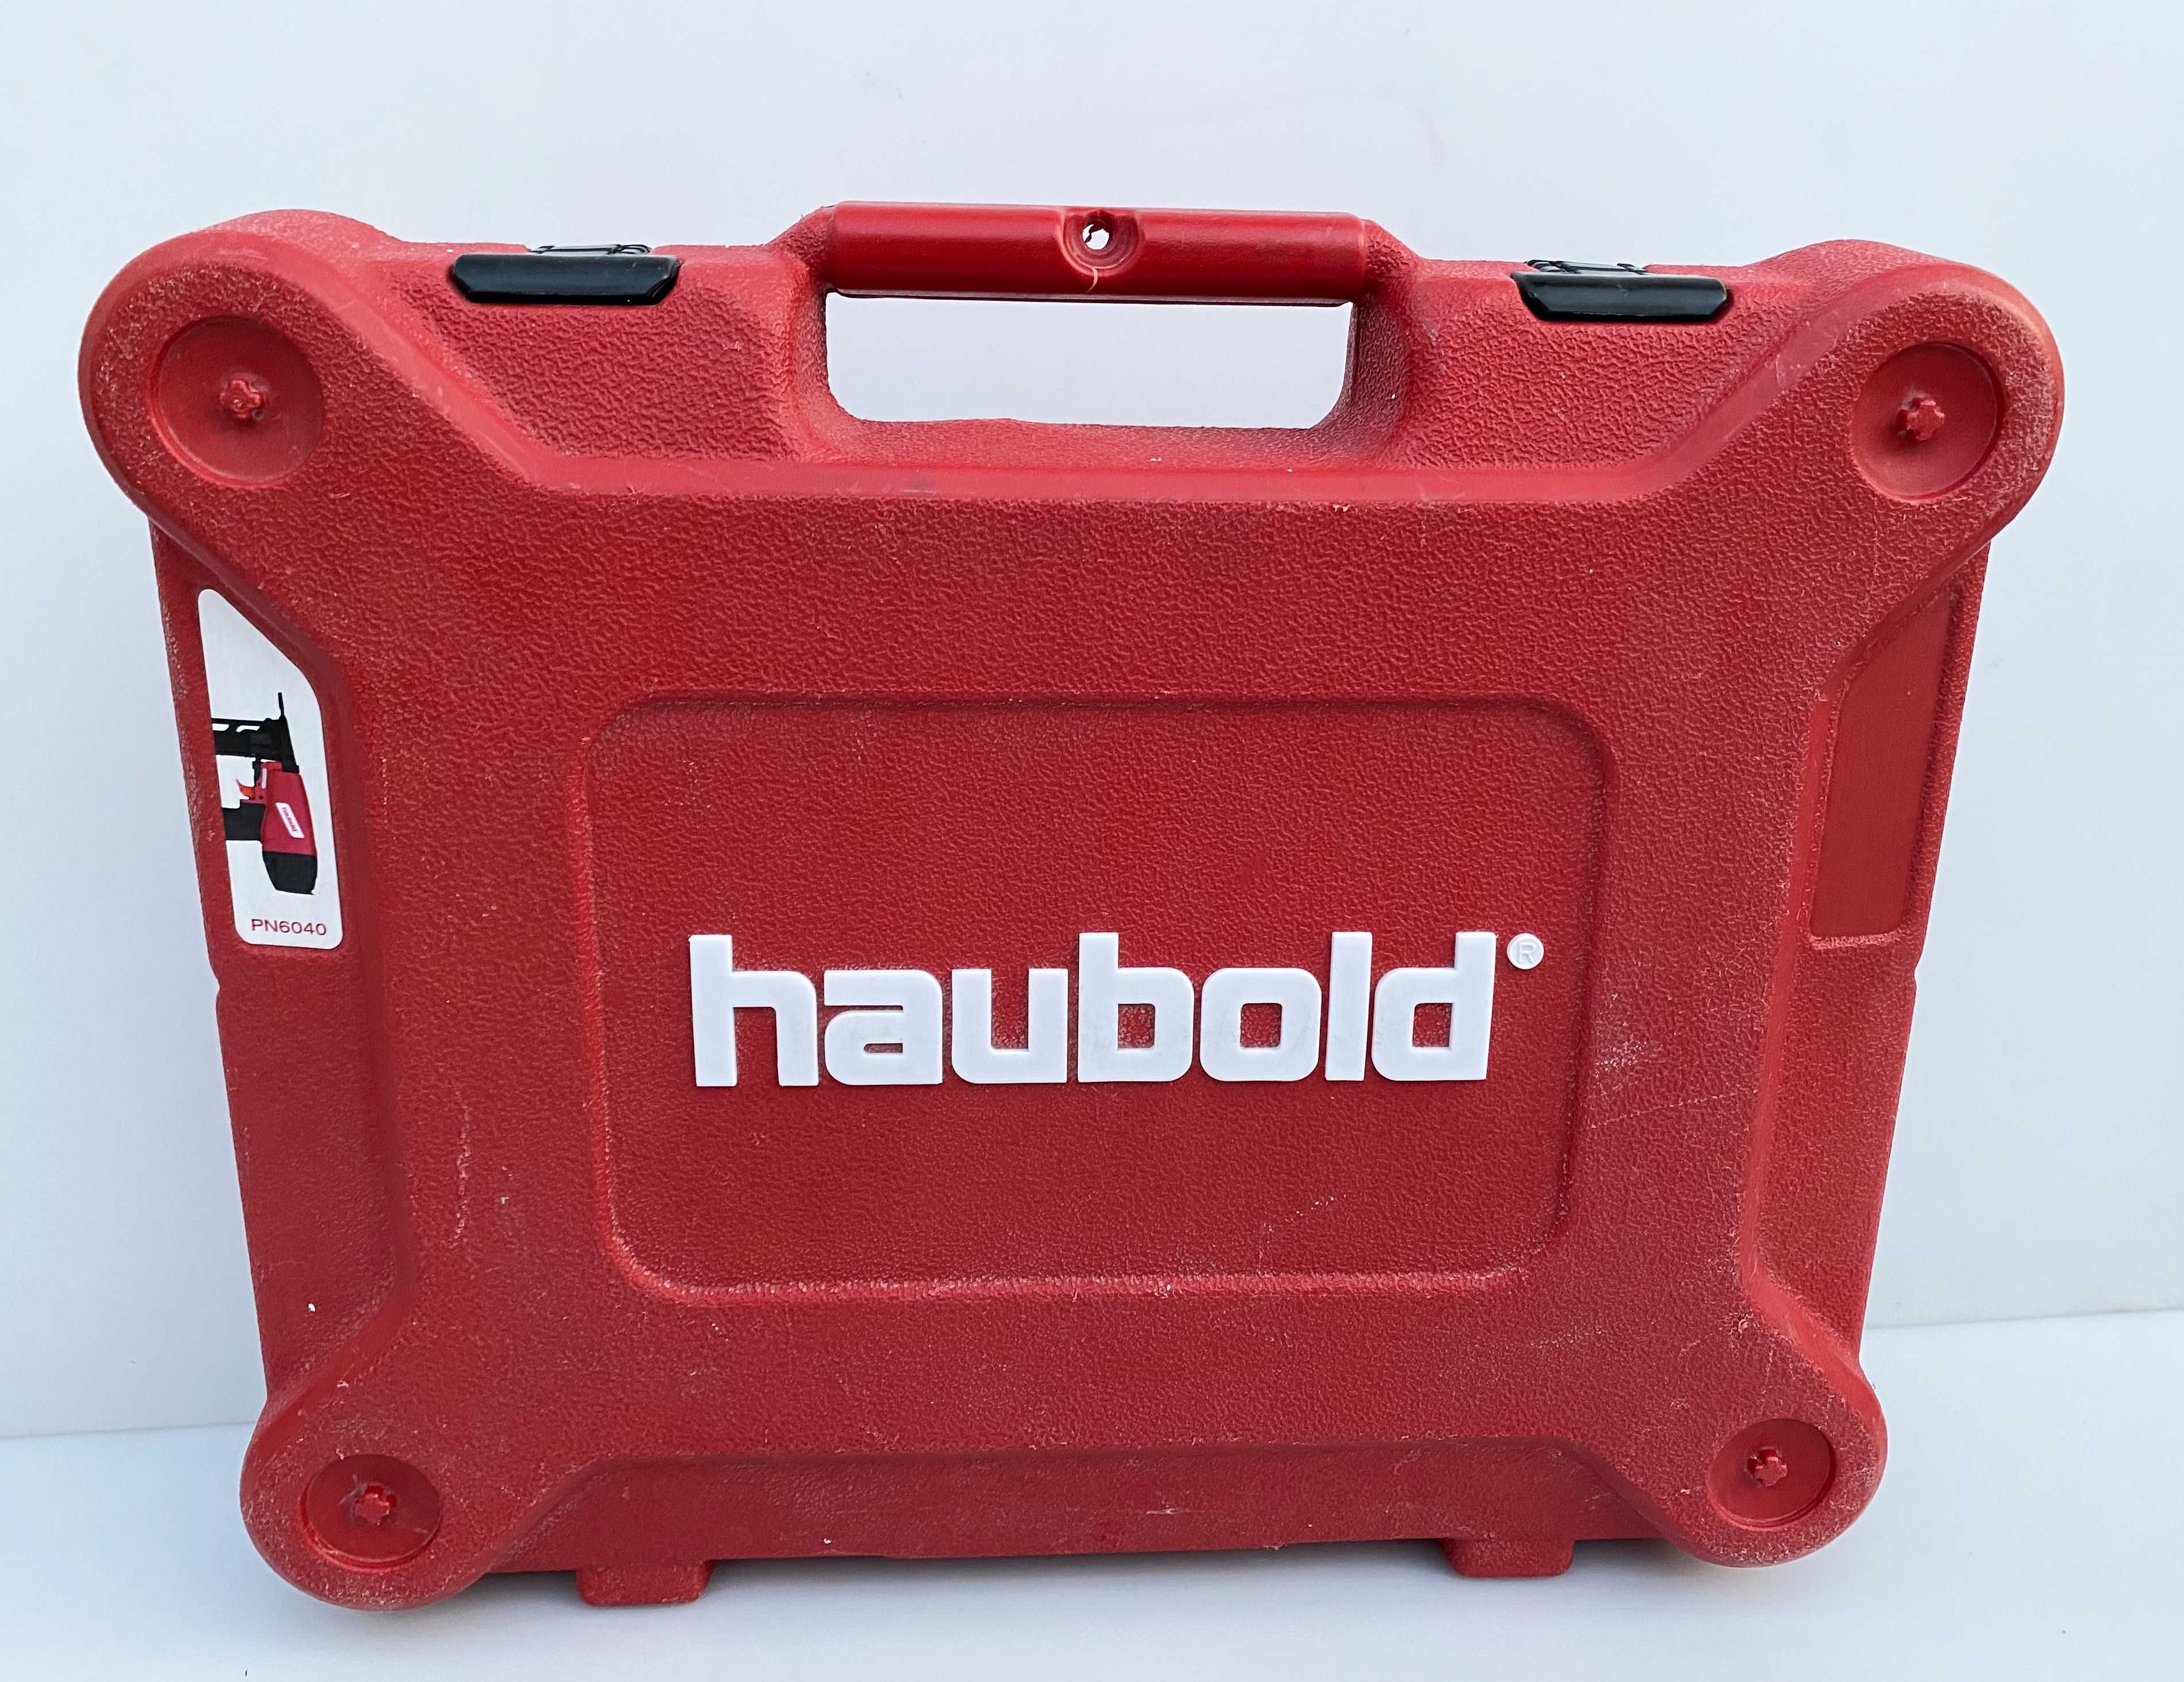 HAUBOLD PN 6040 - Професионален пневматичен такер за скоби (телбод)